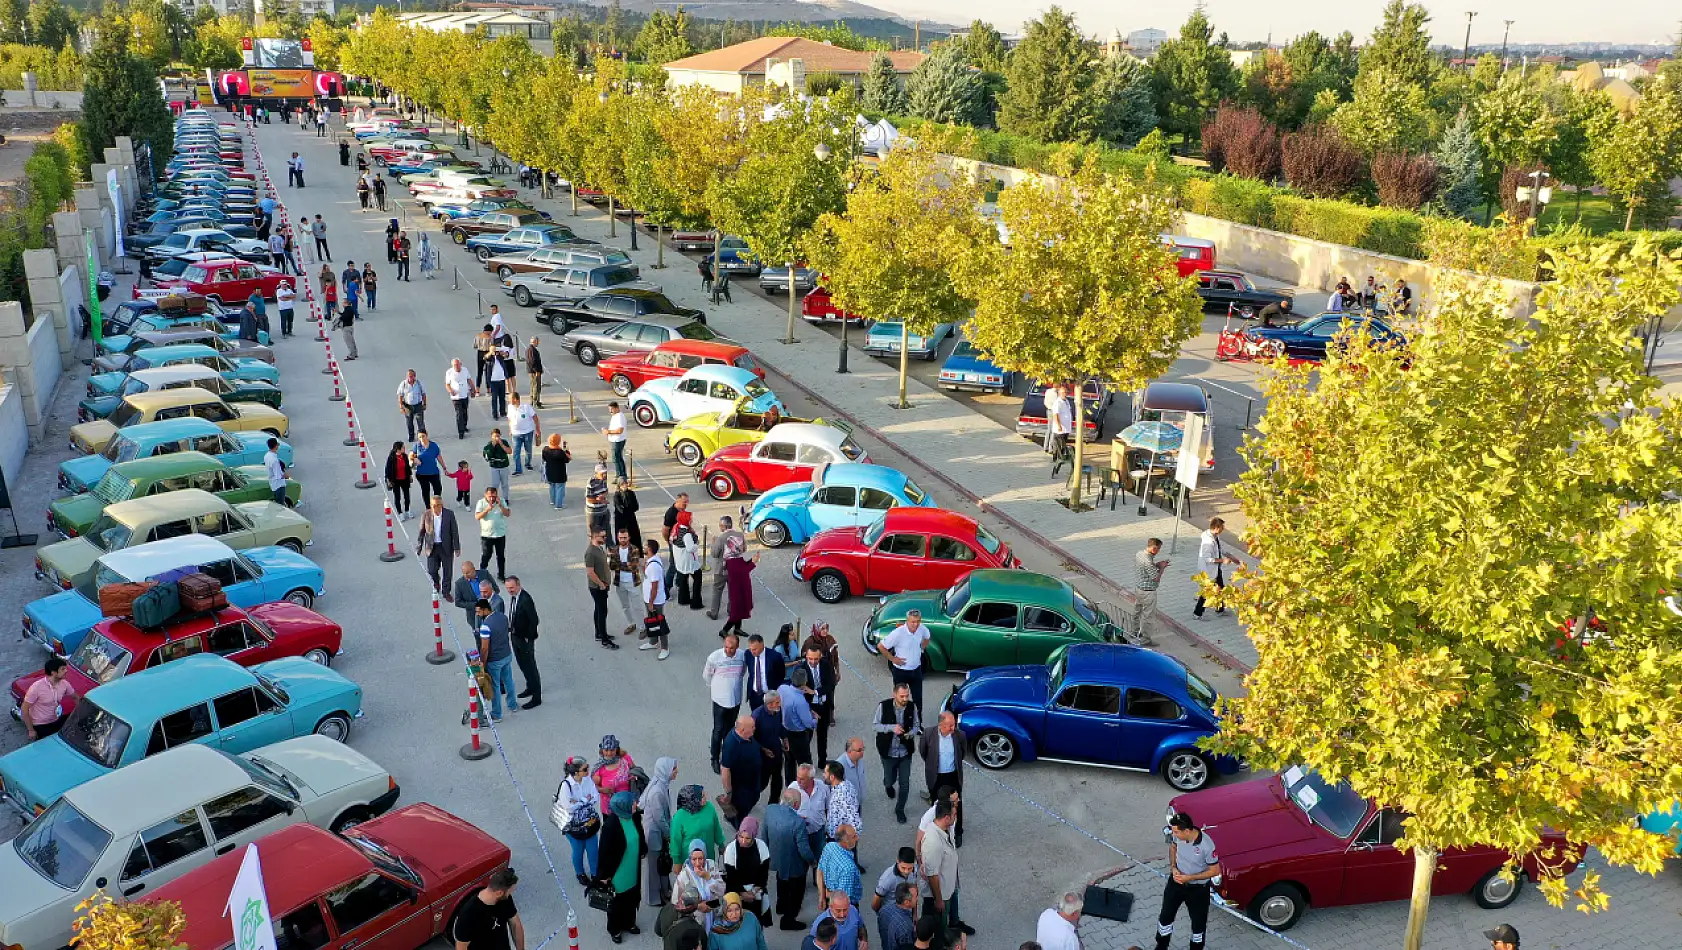 Konya'da otomobil tutkunlarını sevindirecek fuar başladı: 3 gün sürecek!